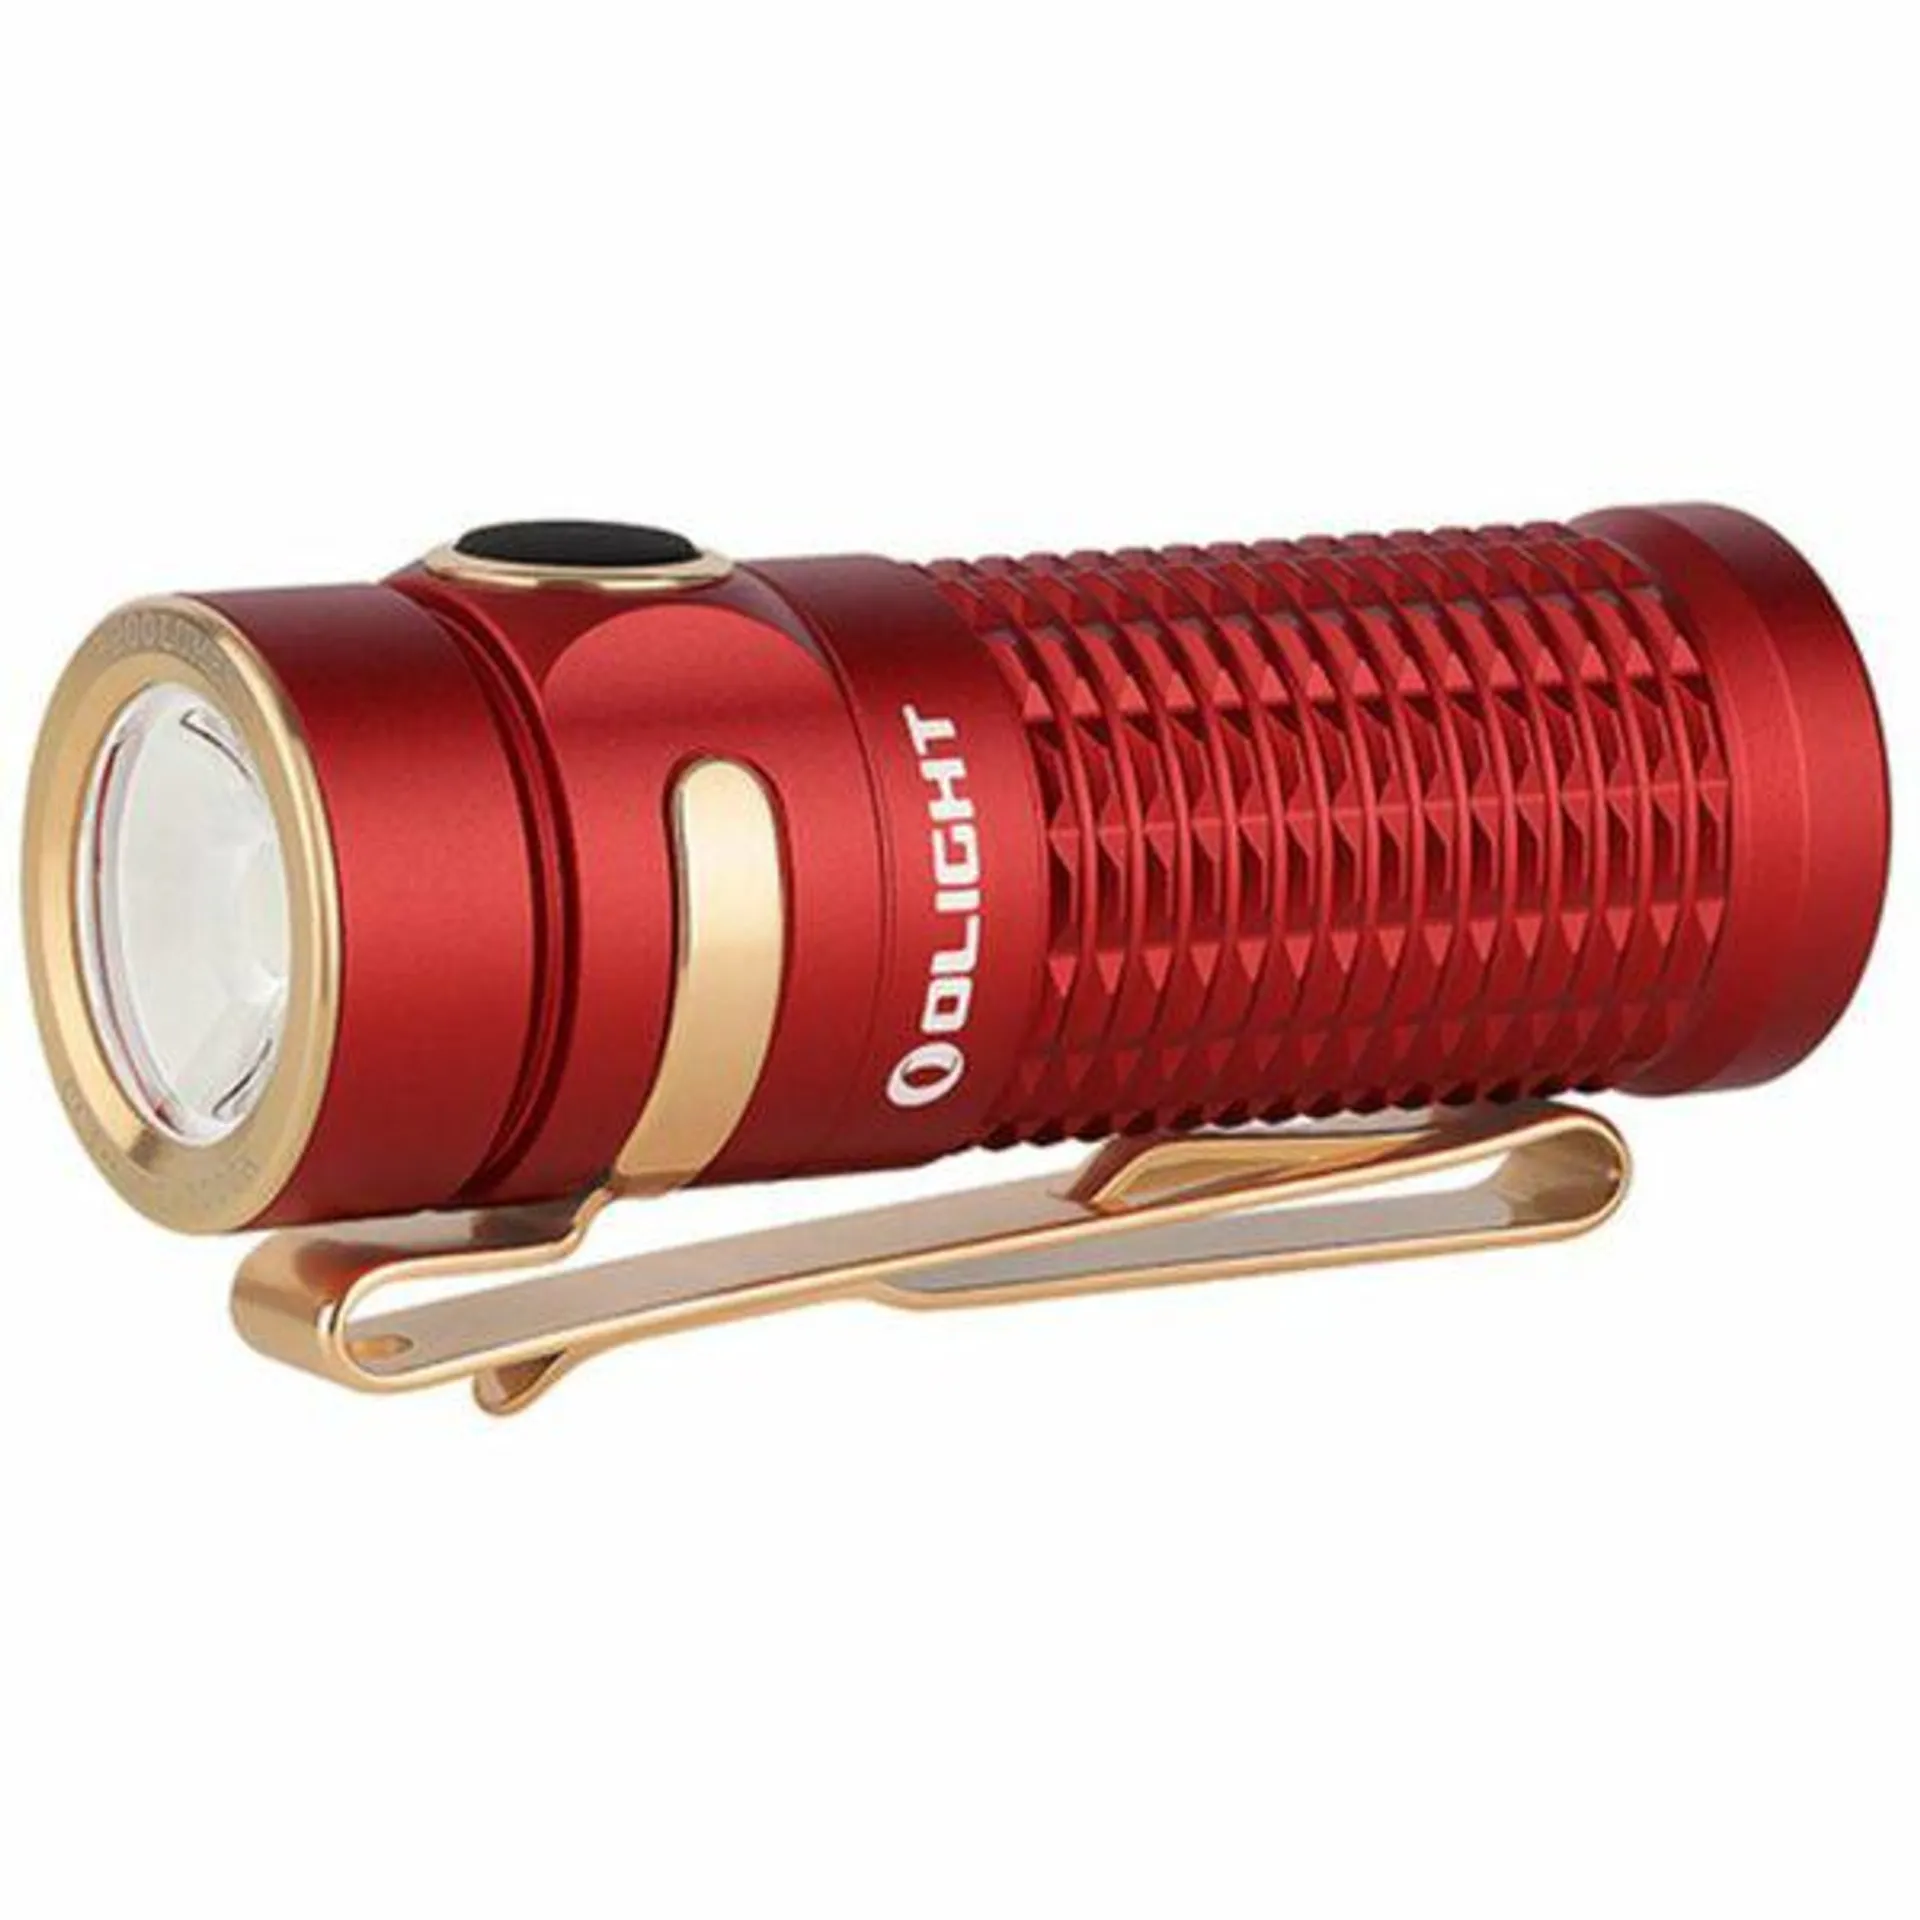 Olight Baton 3 Flashlight – Red